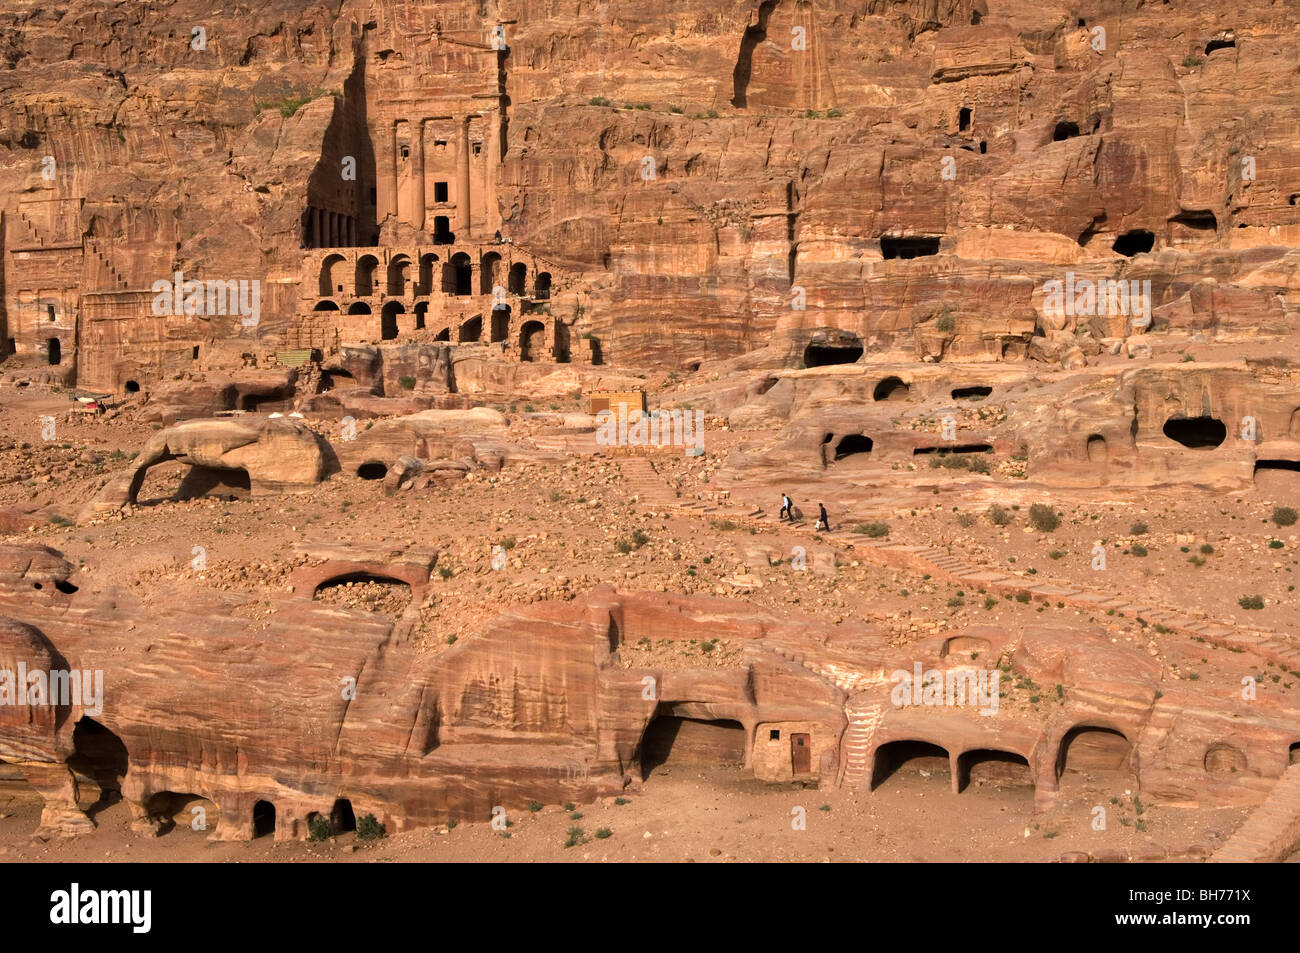 Il Nabatean tombe di Petra, Giordania, sono stati presi in consegna dai Romani come esse giacciono sul vecchio incenso rotte commerciali. Tombe reali Foto Stock